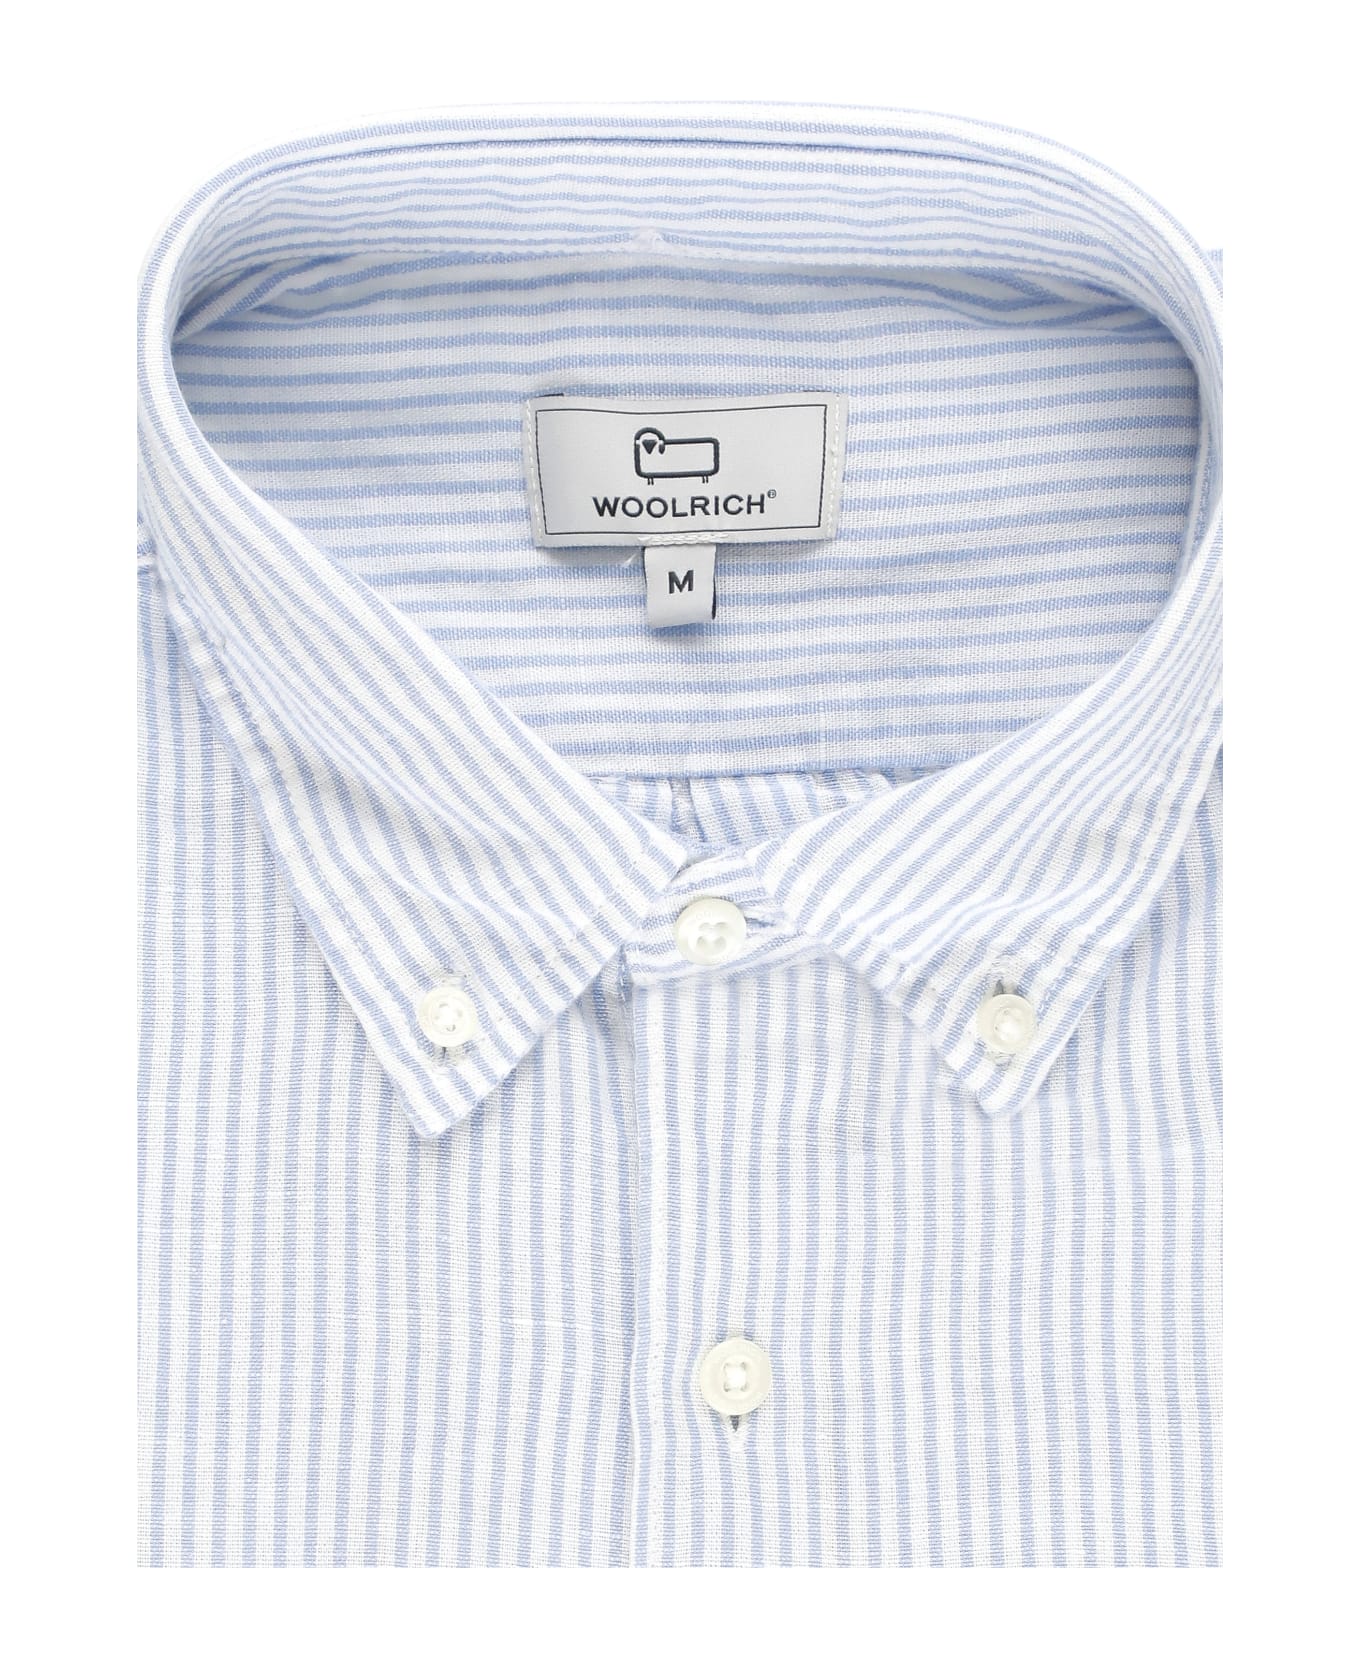 Woolrich Blend Linen Shirt - Light Blue